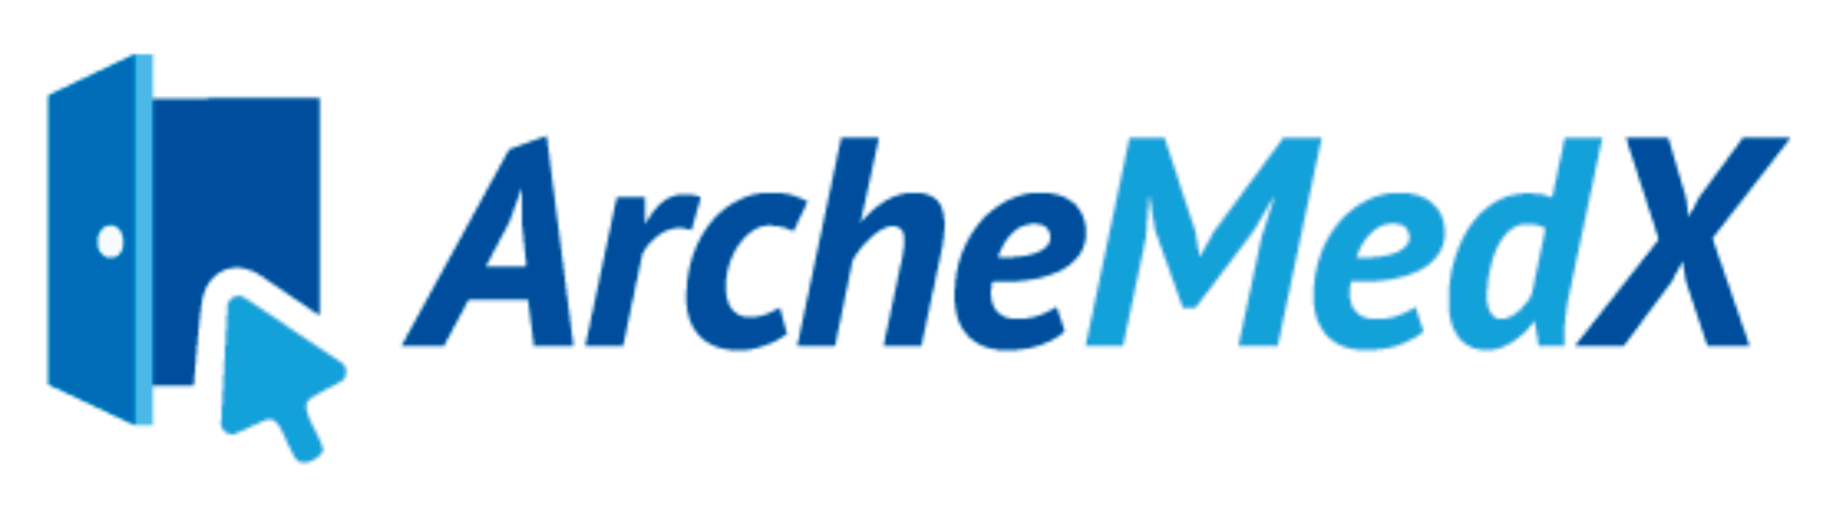 ArcheMedX Logo